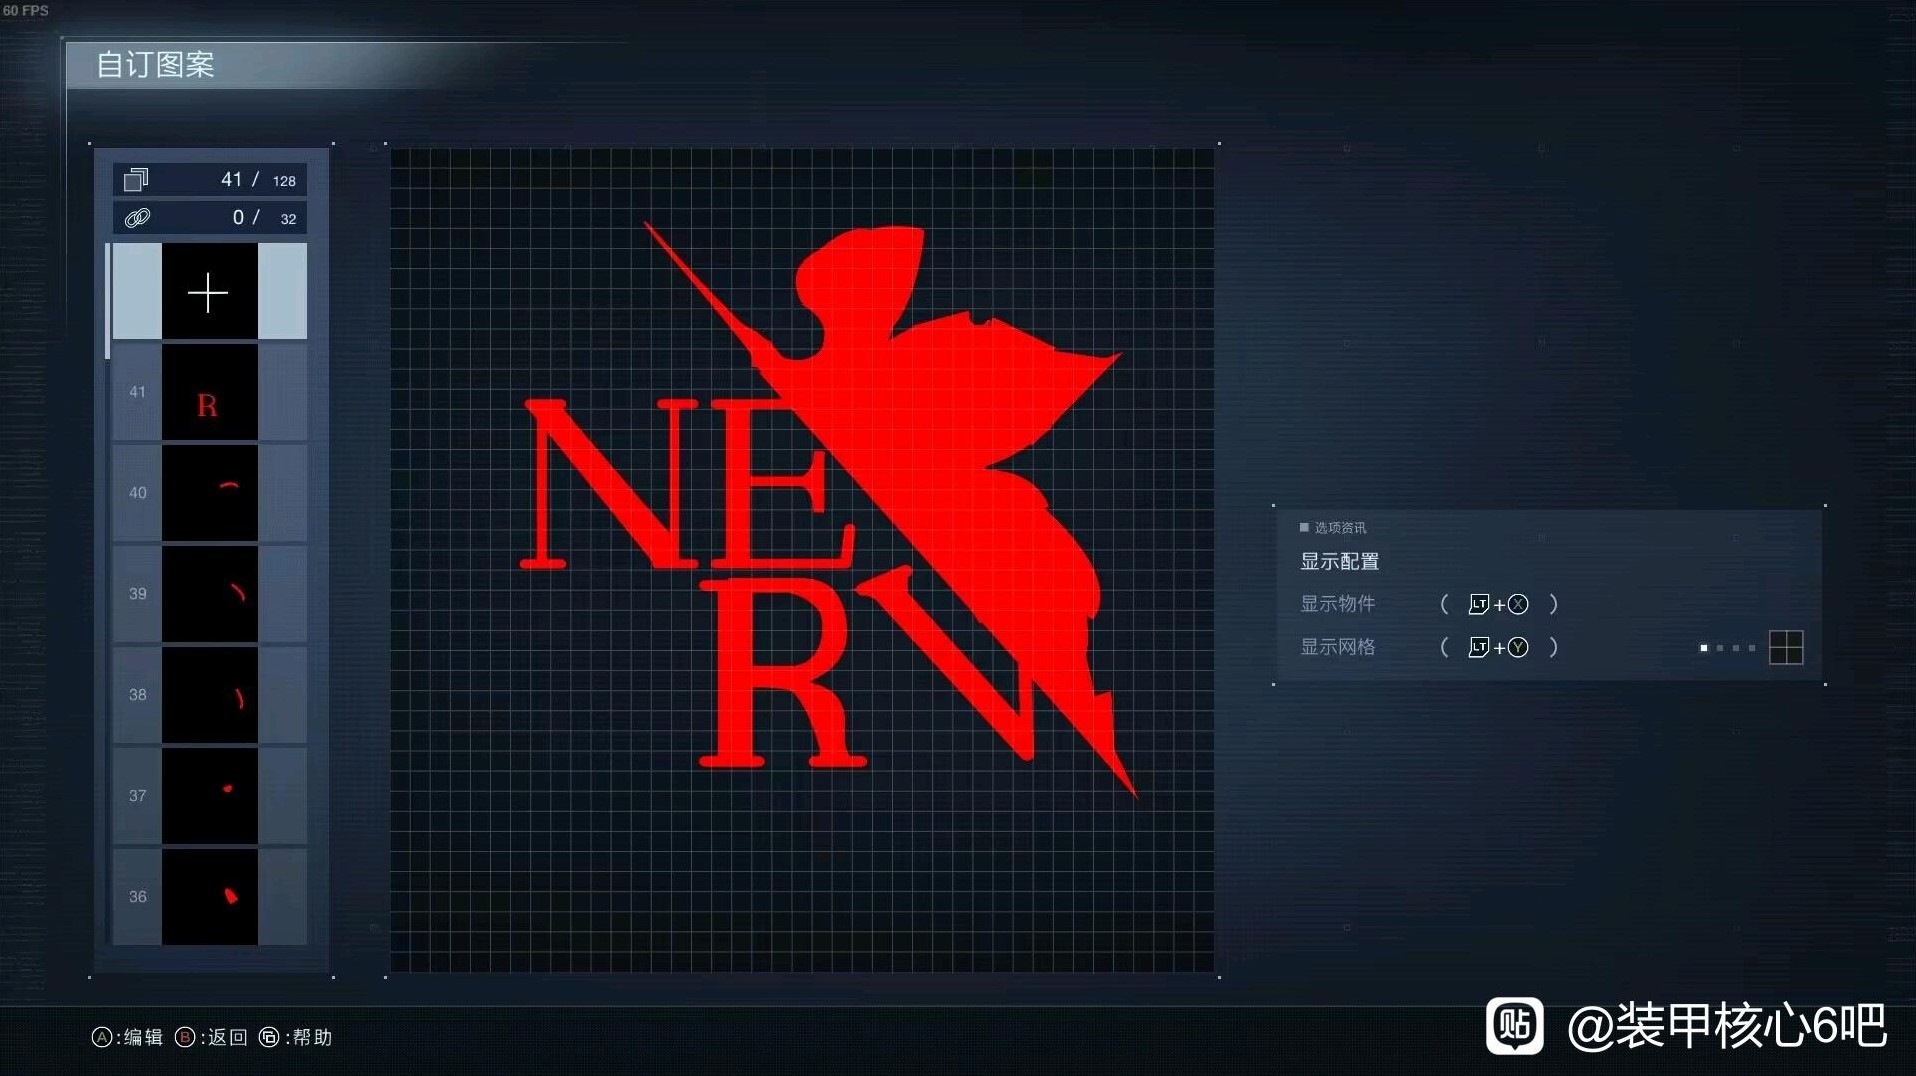 《装甲核心6》新世纪福音战士NERV图章分享 - 第1张